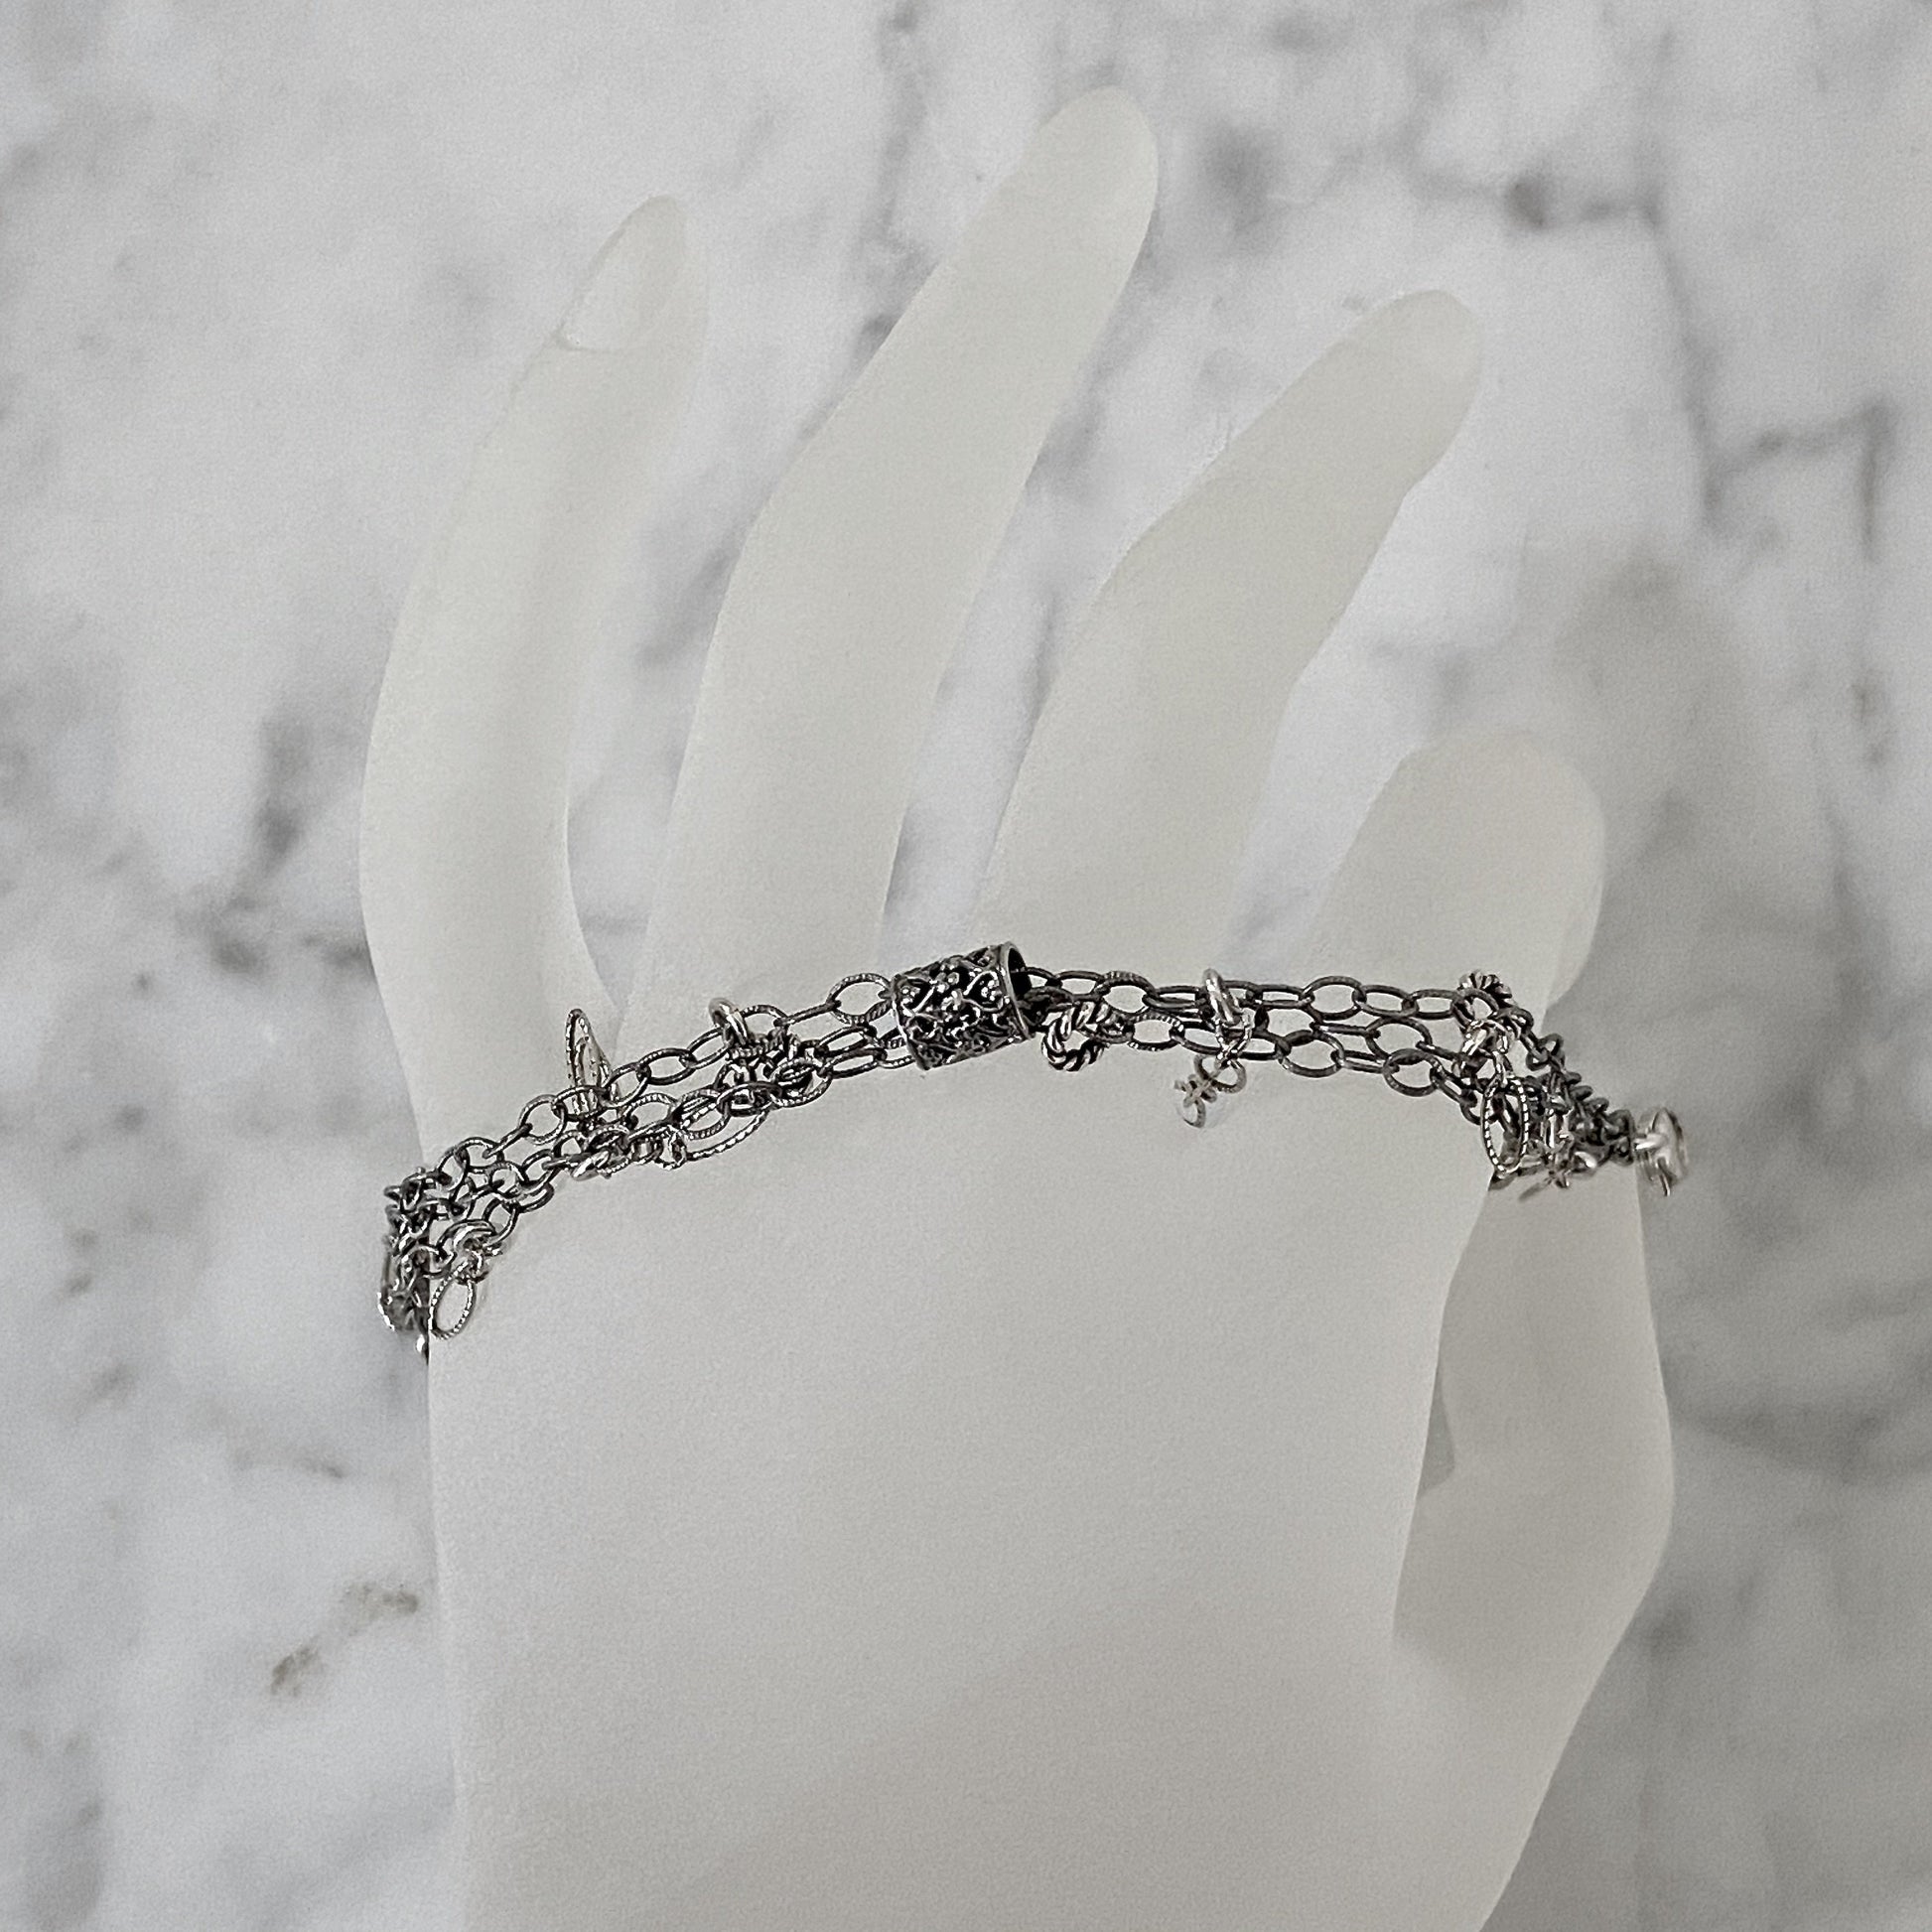 7" askew fringe antiqued silver bracelet by Arpaia